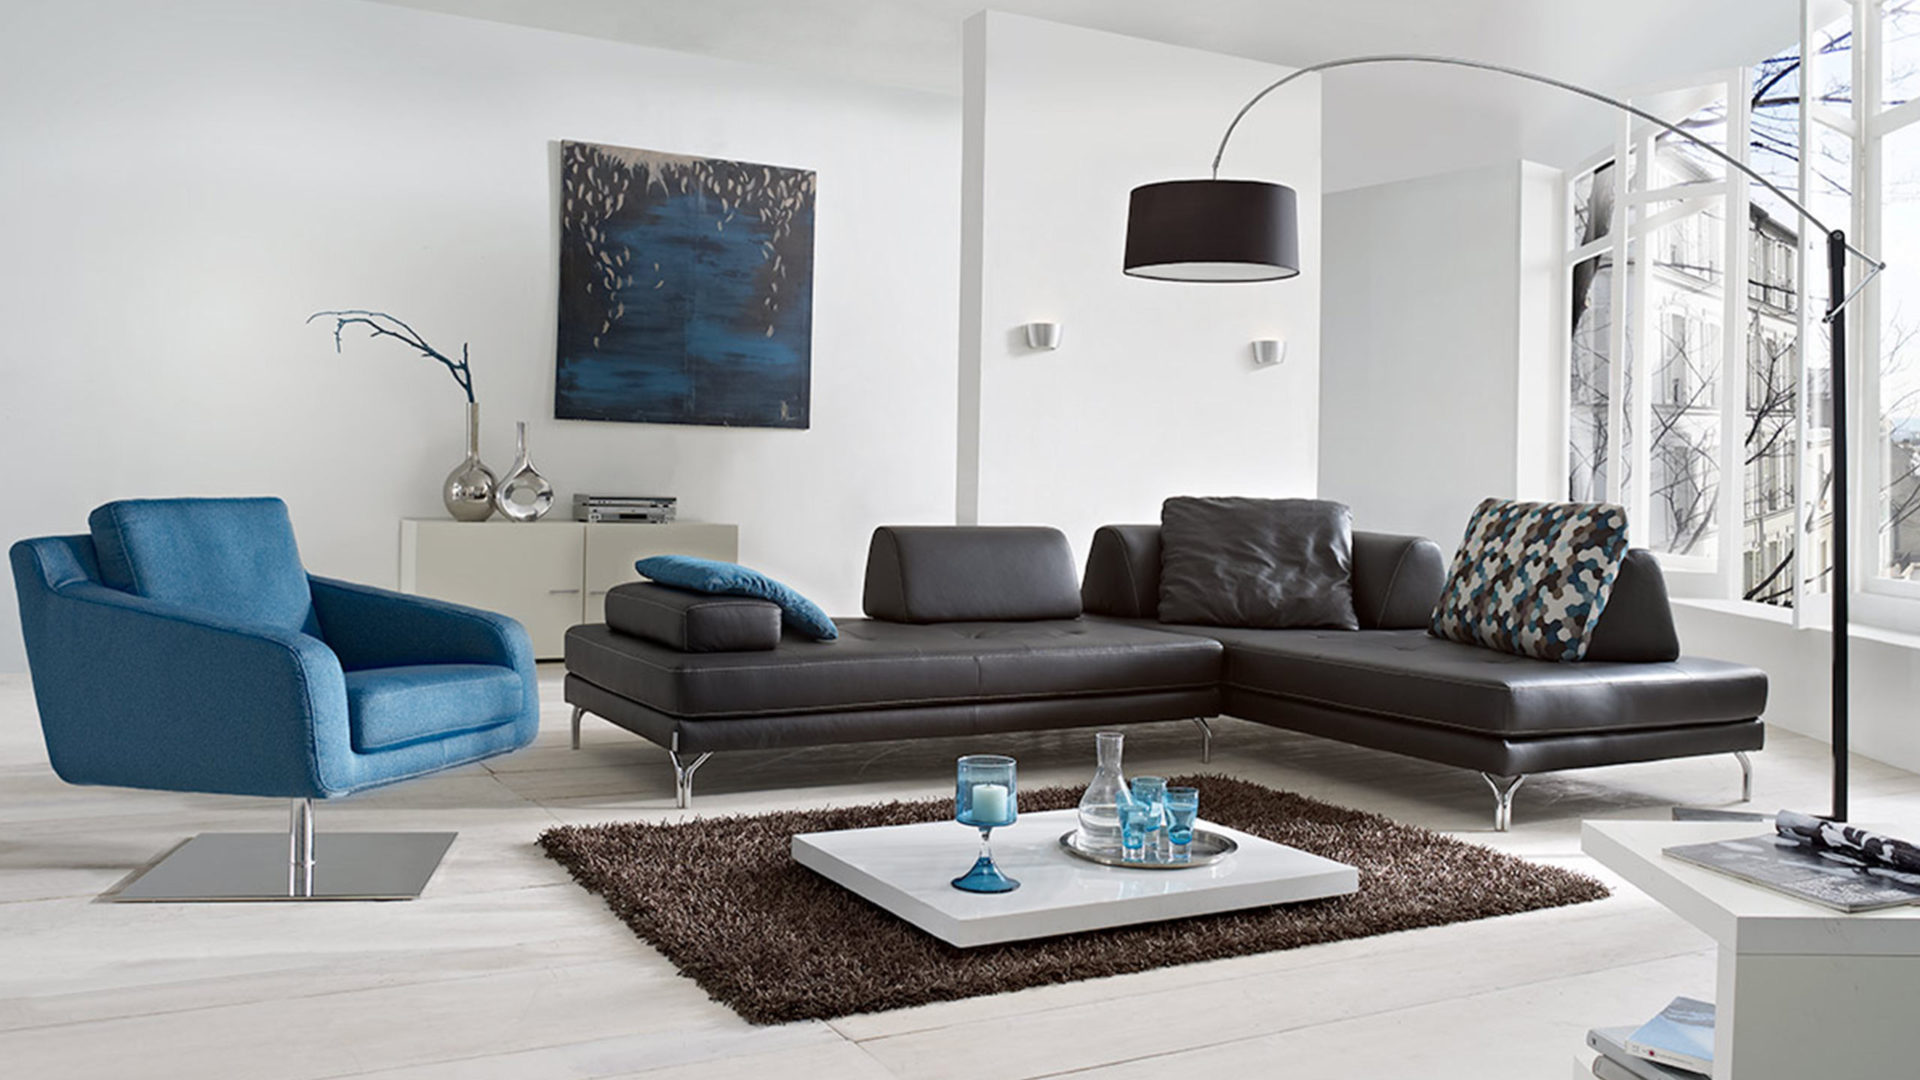 w schillig sofa maxx im minimalismus wohnzimmer blau schwarzz